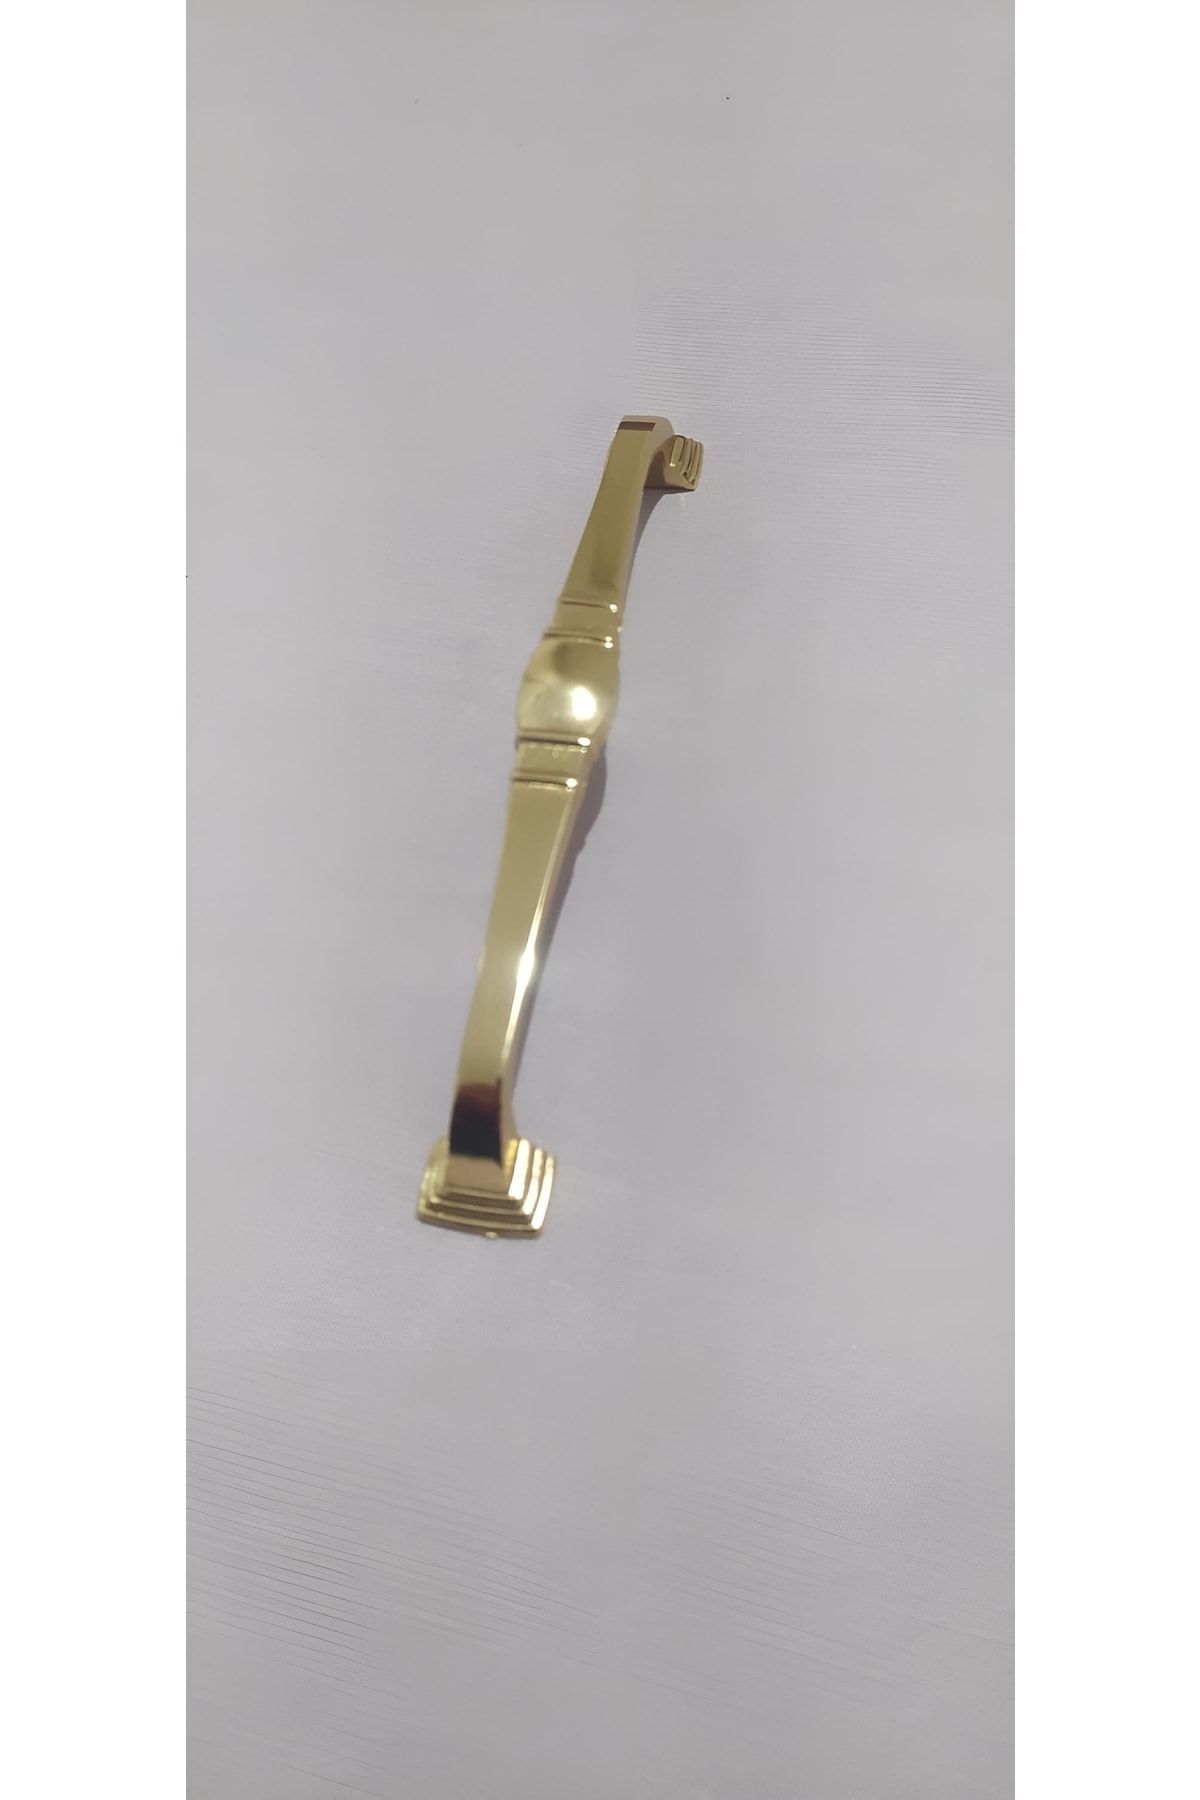 sehrimanoglu Erva Altın Kulp 160mm Dolap Çekmece Vestiyer Mobilya Kulpu Mutfak Dolabı Kapak Kulpu